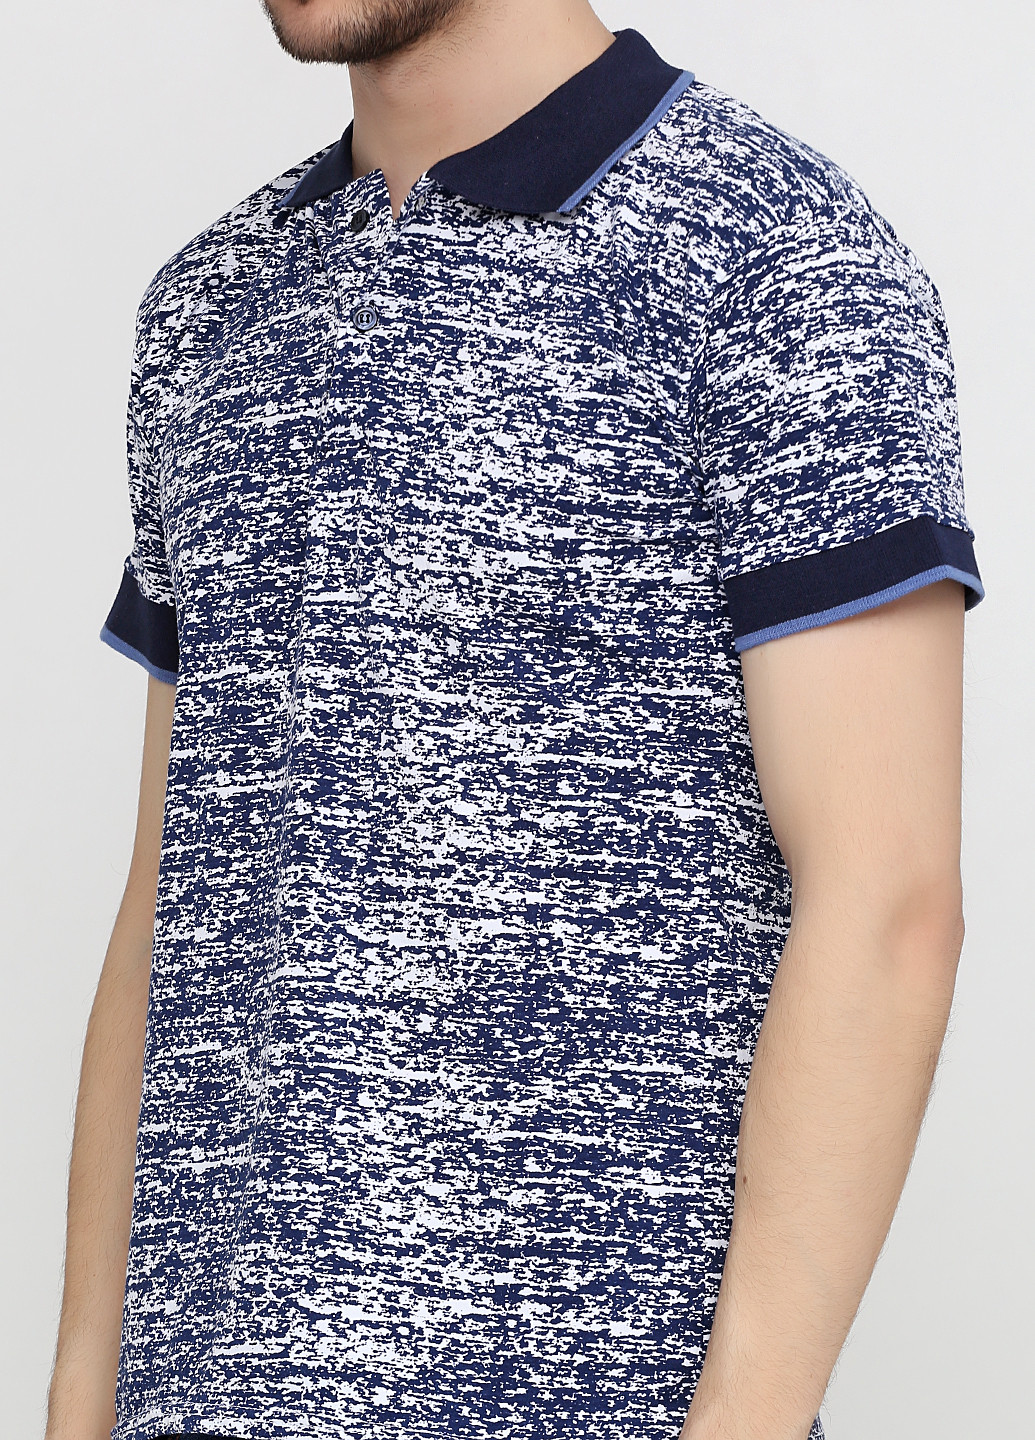 Цветная футболка-поло для мужчин Chiarotex меланжевая